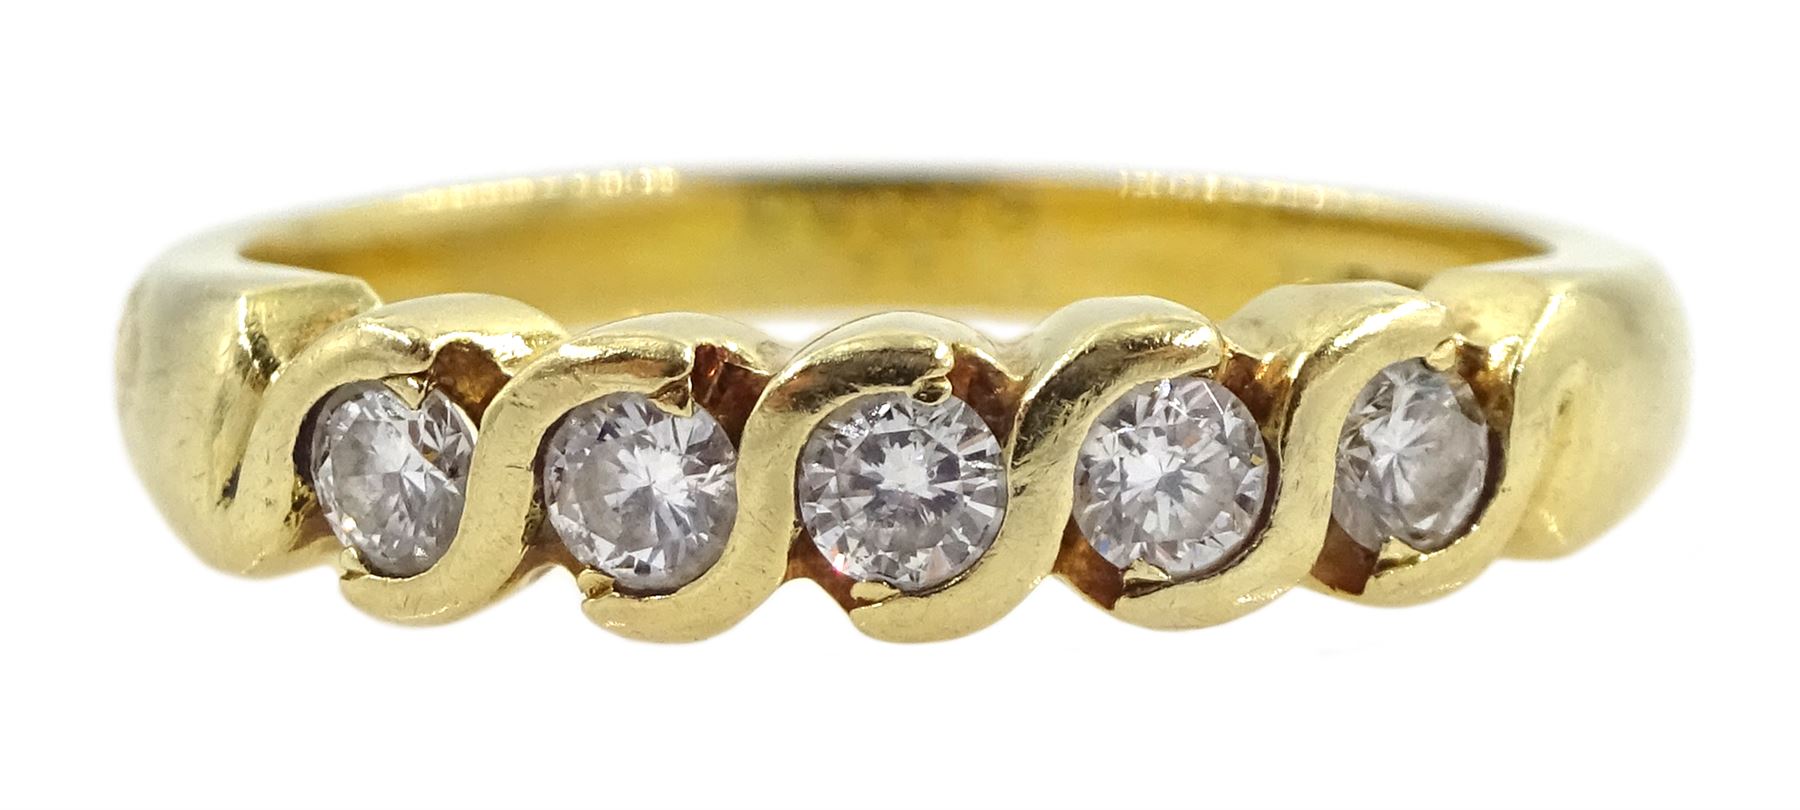 18ct gold five stone round brilliant cut diamond ring